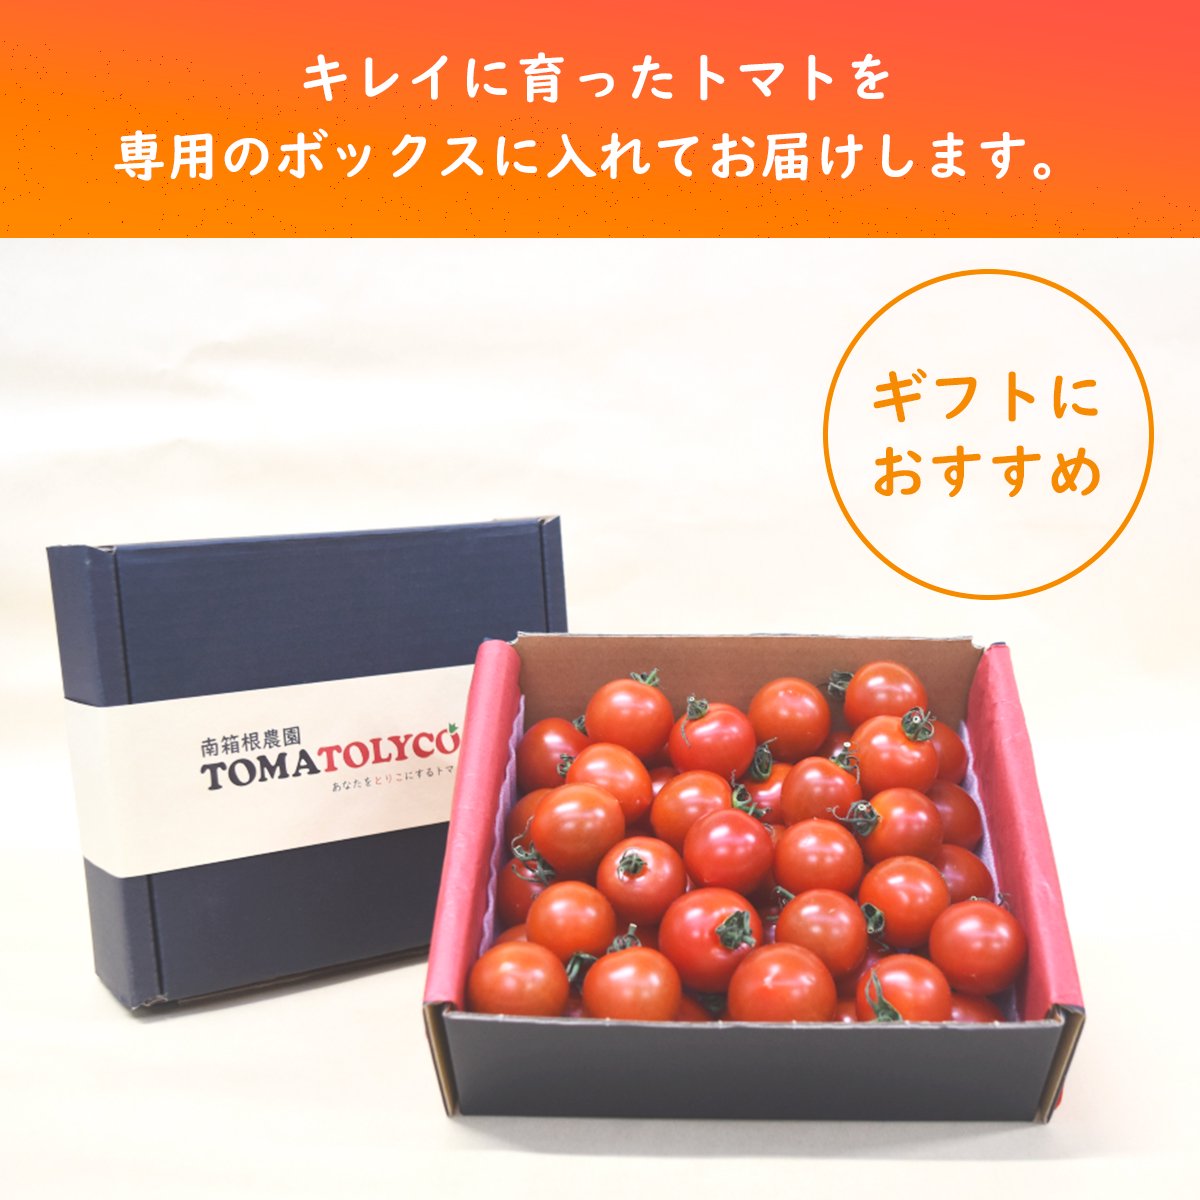 トマトリコギフトボックス